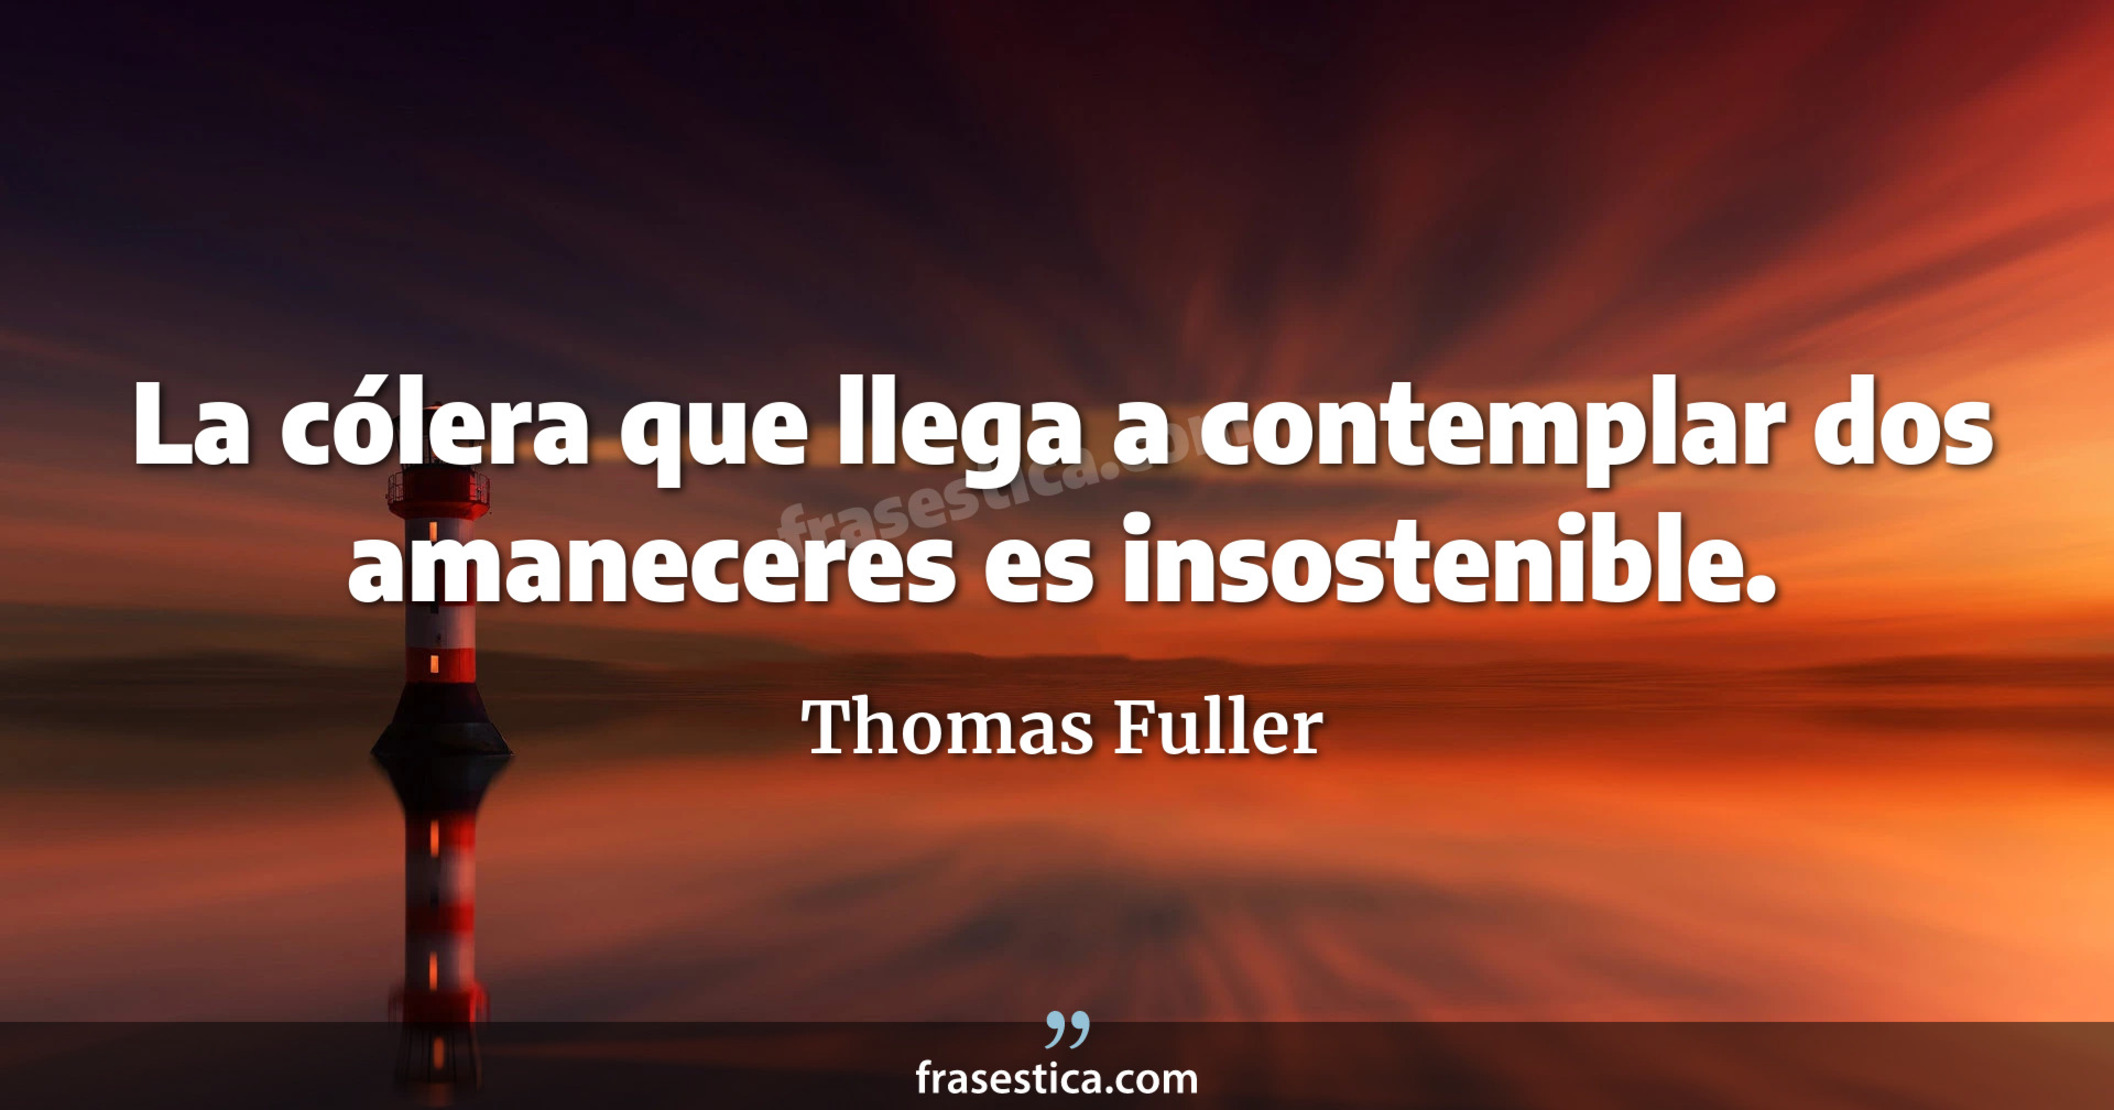 La cólera que llega a contemplar dos amaneceres es insostenible. - Thomas Fuller